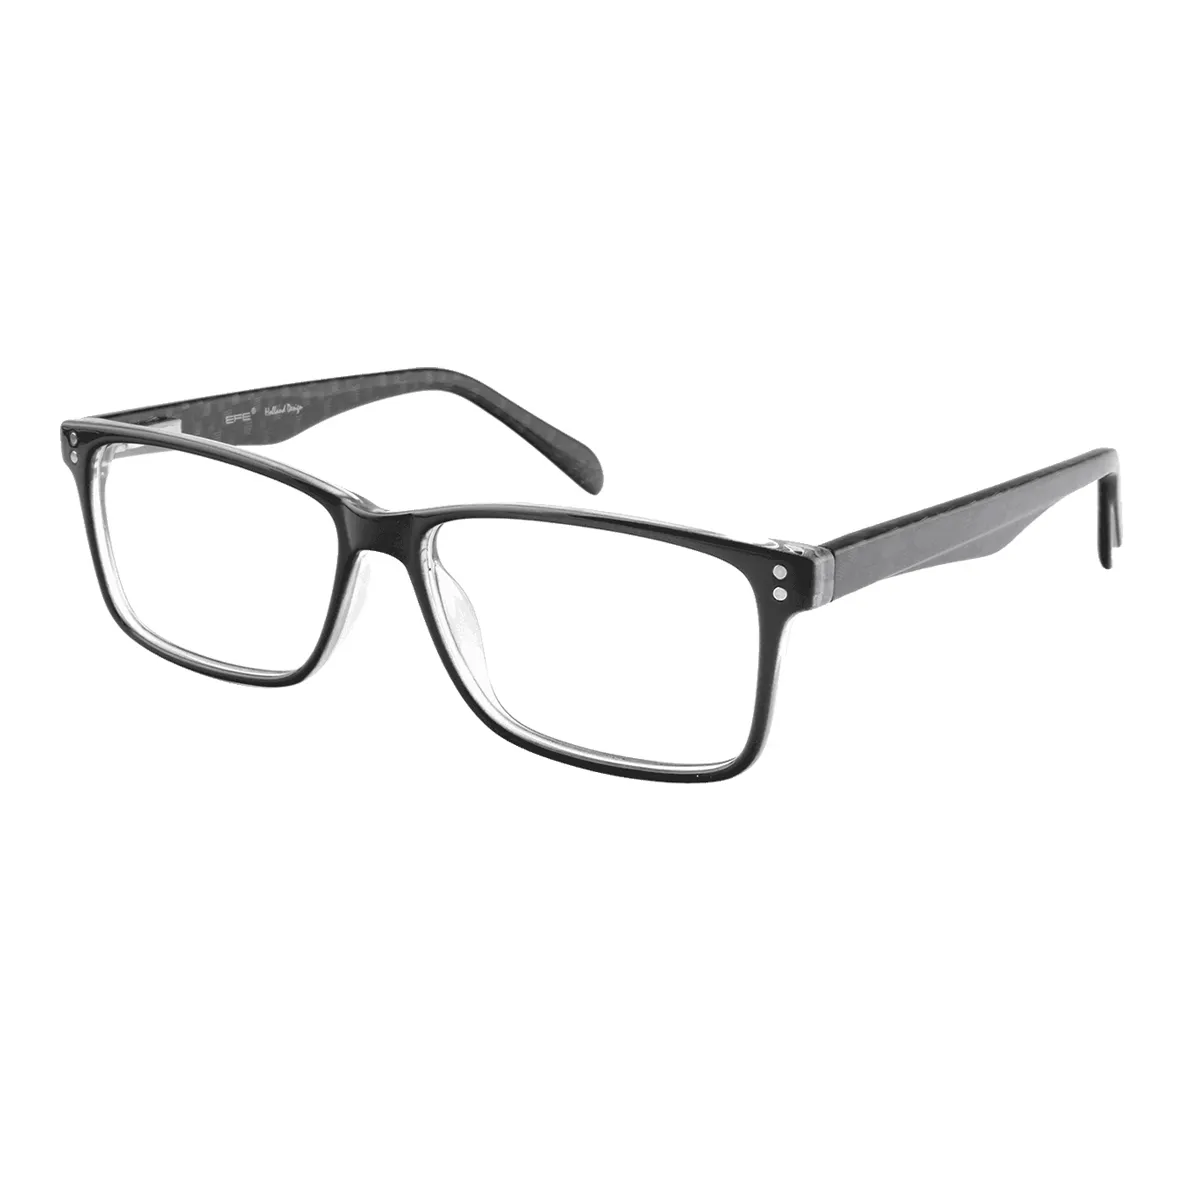 Nadine - Rectangle Transparent/Gray Glasses for Men & Women